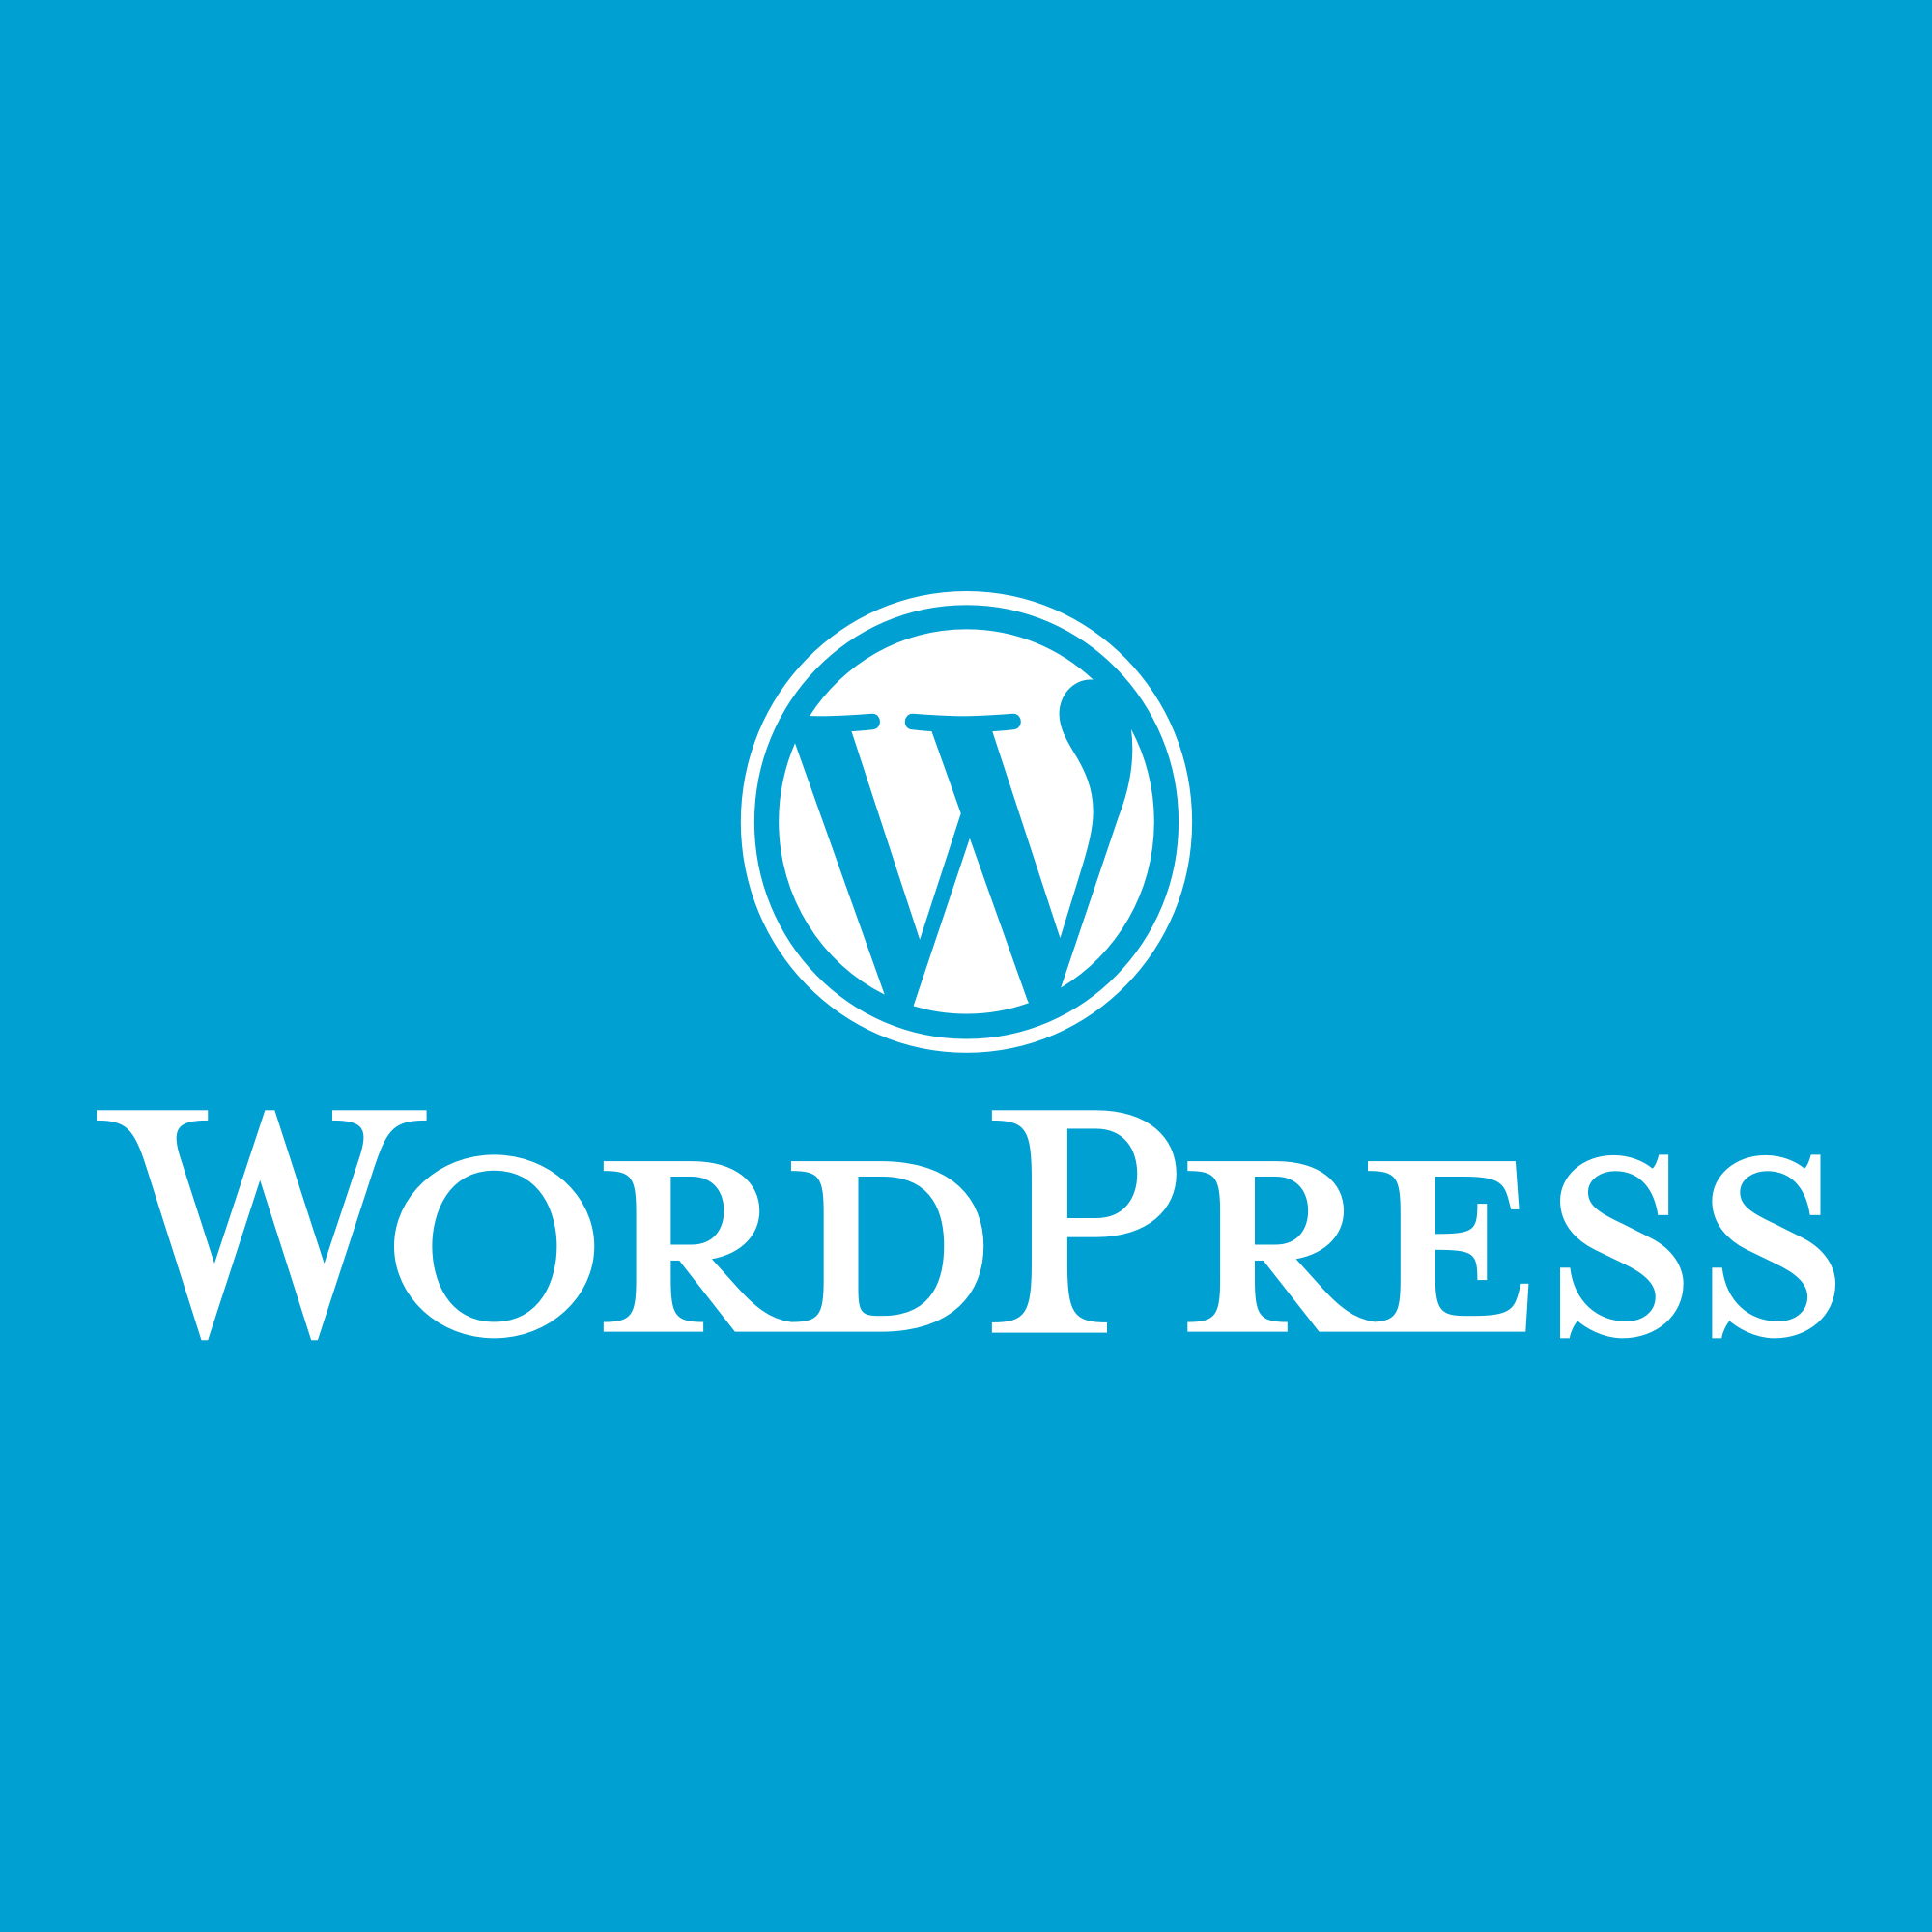 WordPress.com ile WordPress.org Farkları Nelerdir?